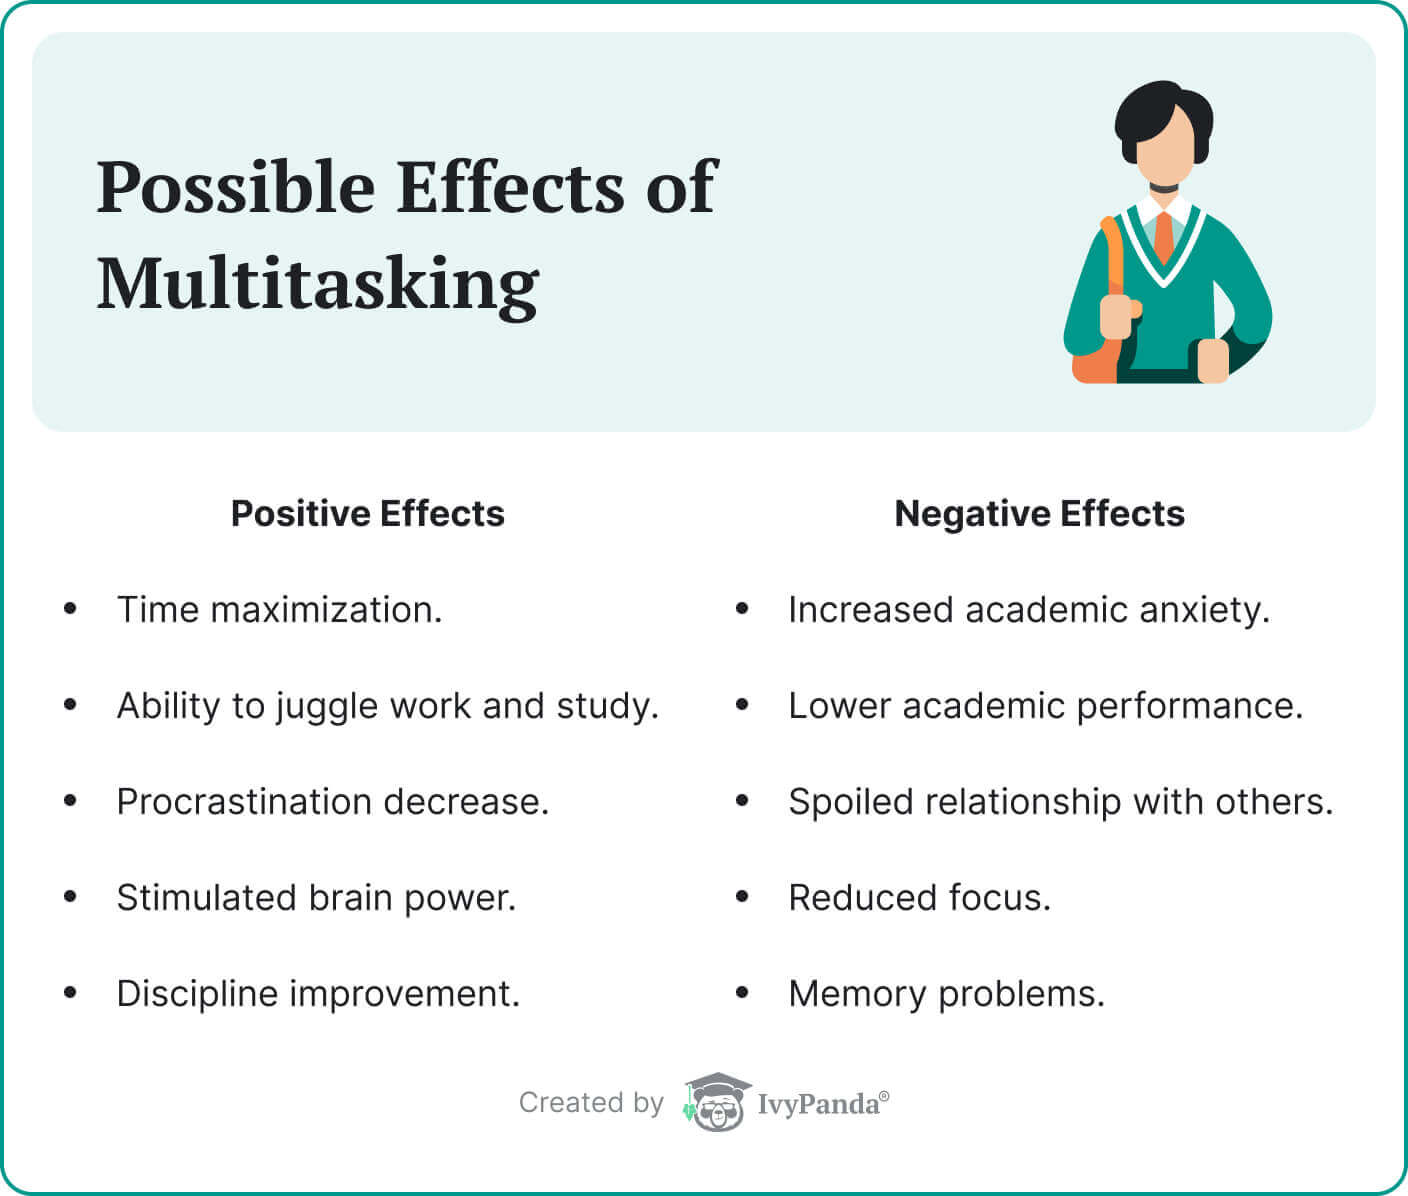 Improves mental multitasking ability